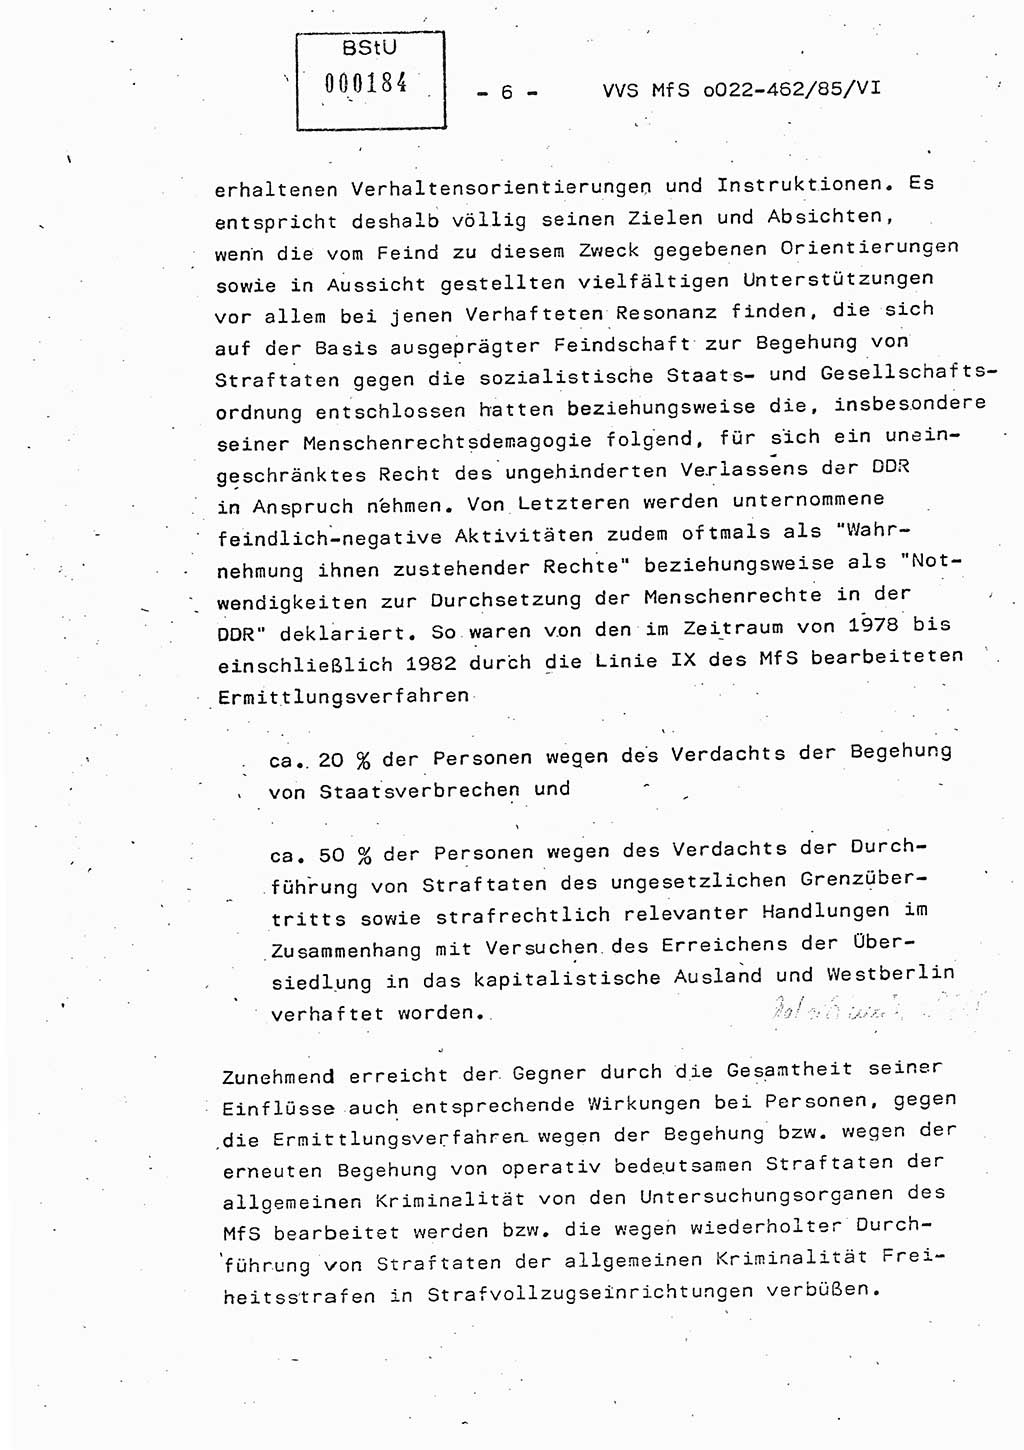 Der Untersuchungshaftvollzug im MfS, Schulungsmaterial Teil Ⅵ, Ministerium für Staatssicherheit [Deutsche Demokratische Republik (DDR)], Abteilung (Abt.) ⅩⅣ, Vertrauliche Verschlußsache (VVS) o022-462/85/Ⅵ, Berlin 1985, Seite 6 (Sch.-Mat. Ⅵ MfS DDR Abt. ⅩⅣ VVS o022-462/85/Ⅵ 1985, S. 6)